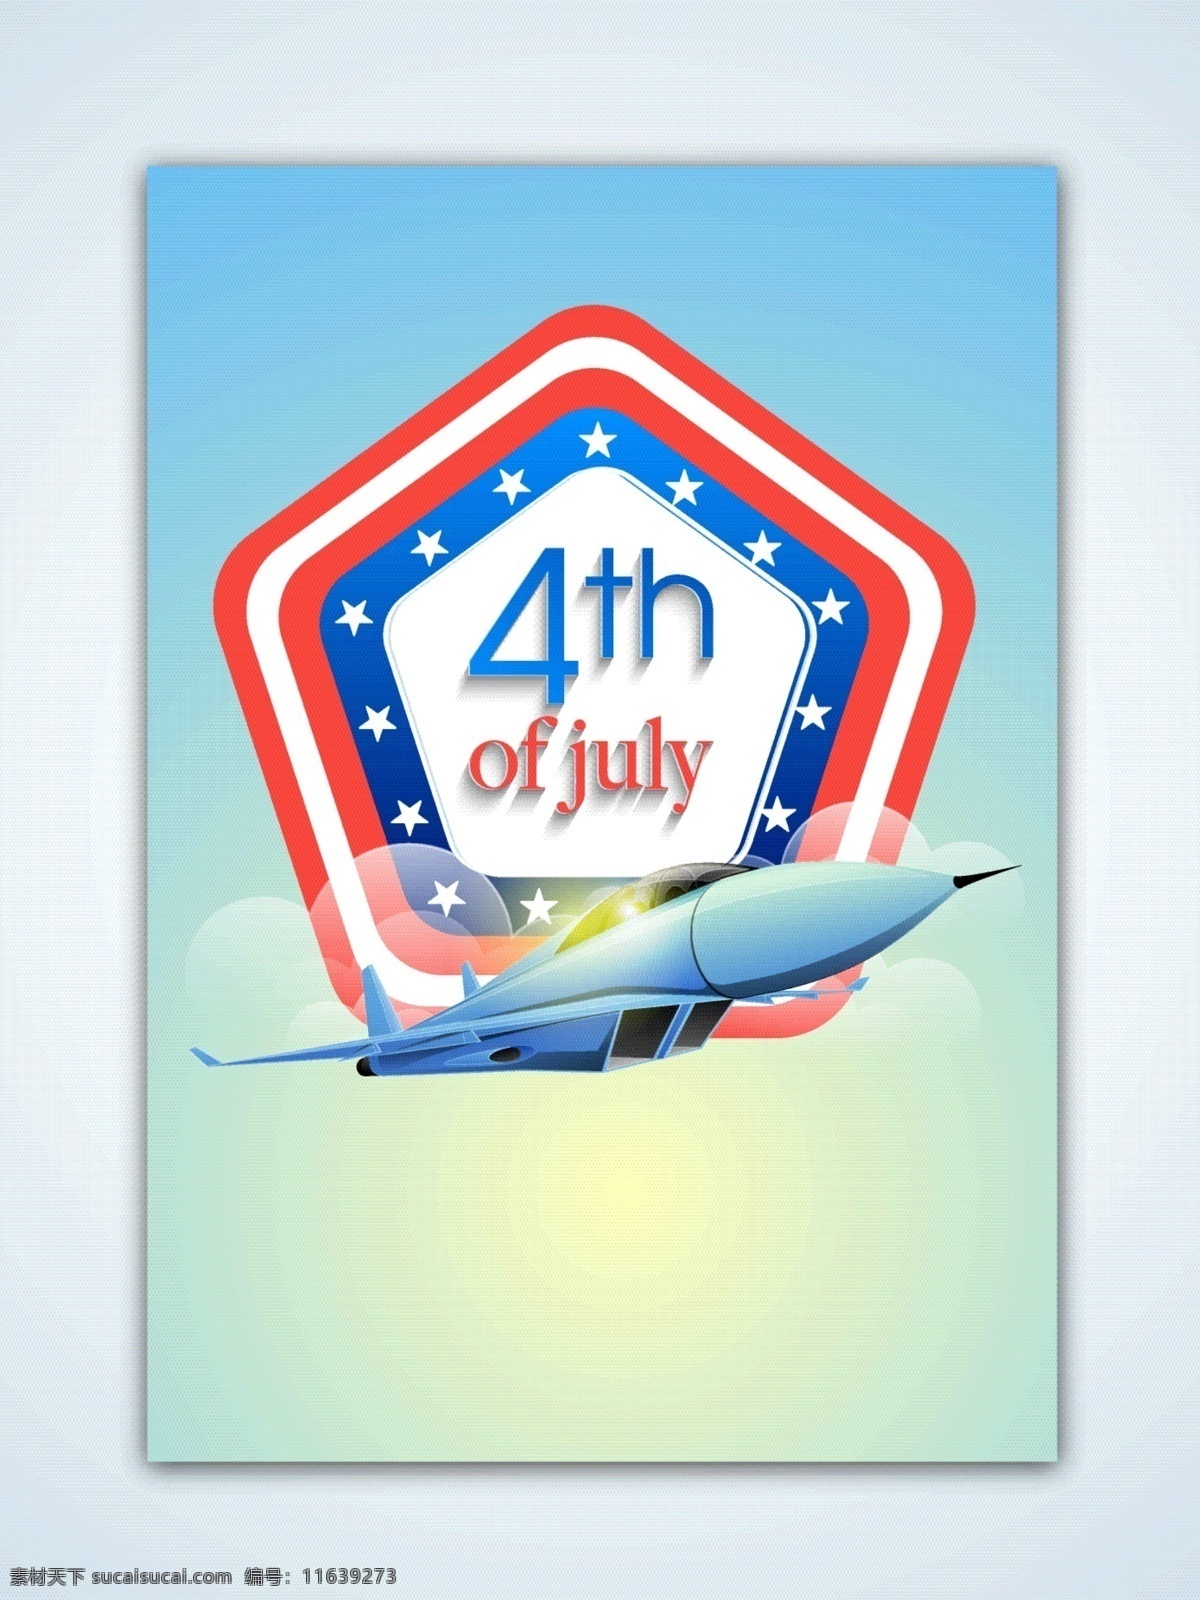 四 七月 背景 飞机 壁纸 庆典 假日 庆祝 美国 传统 自由 选举 独立日 日 爱国 英国 独立 平等